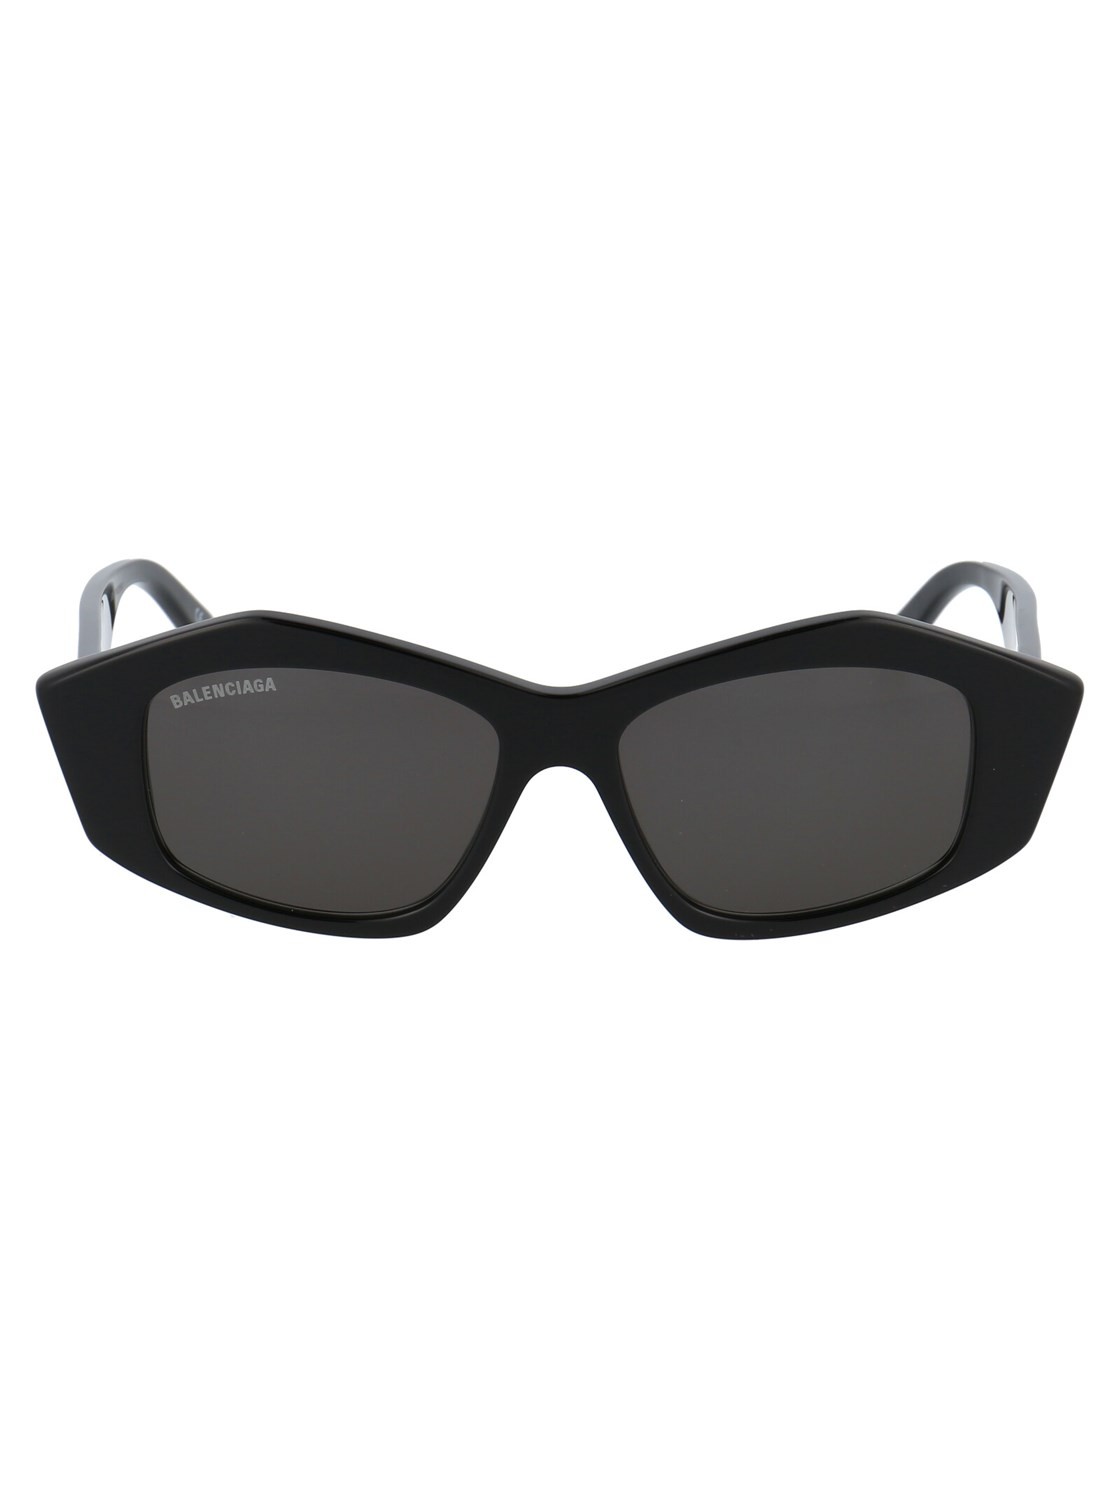 Balenciaga 106 001 - Oculos de Sol